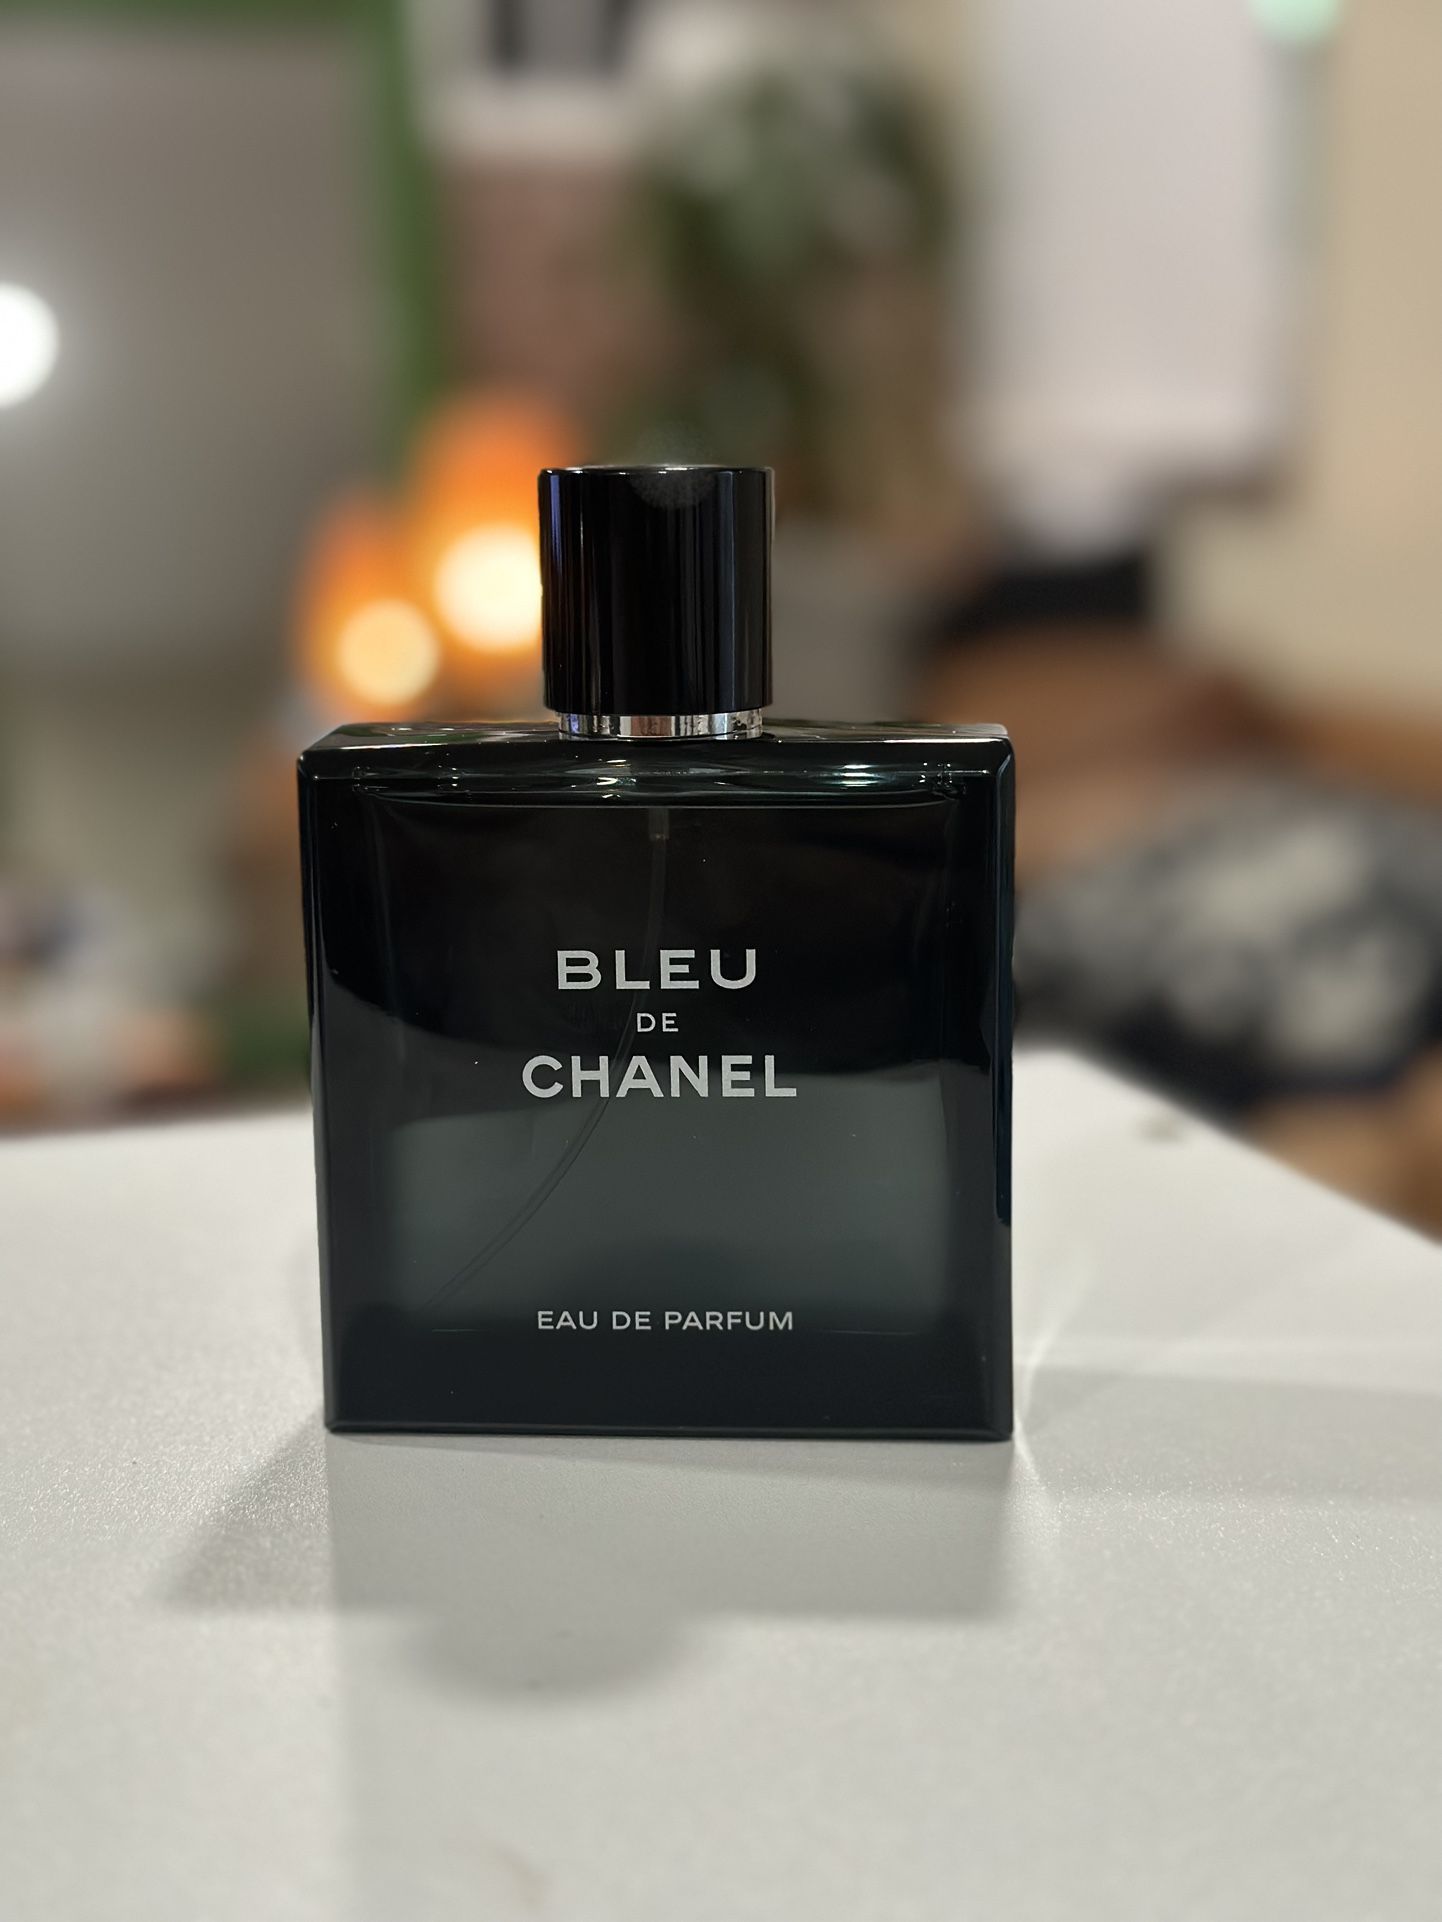 CHANEL BLEU De CHANEL Parfum for Men 3.4 Oz